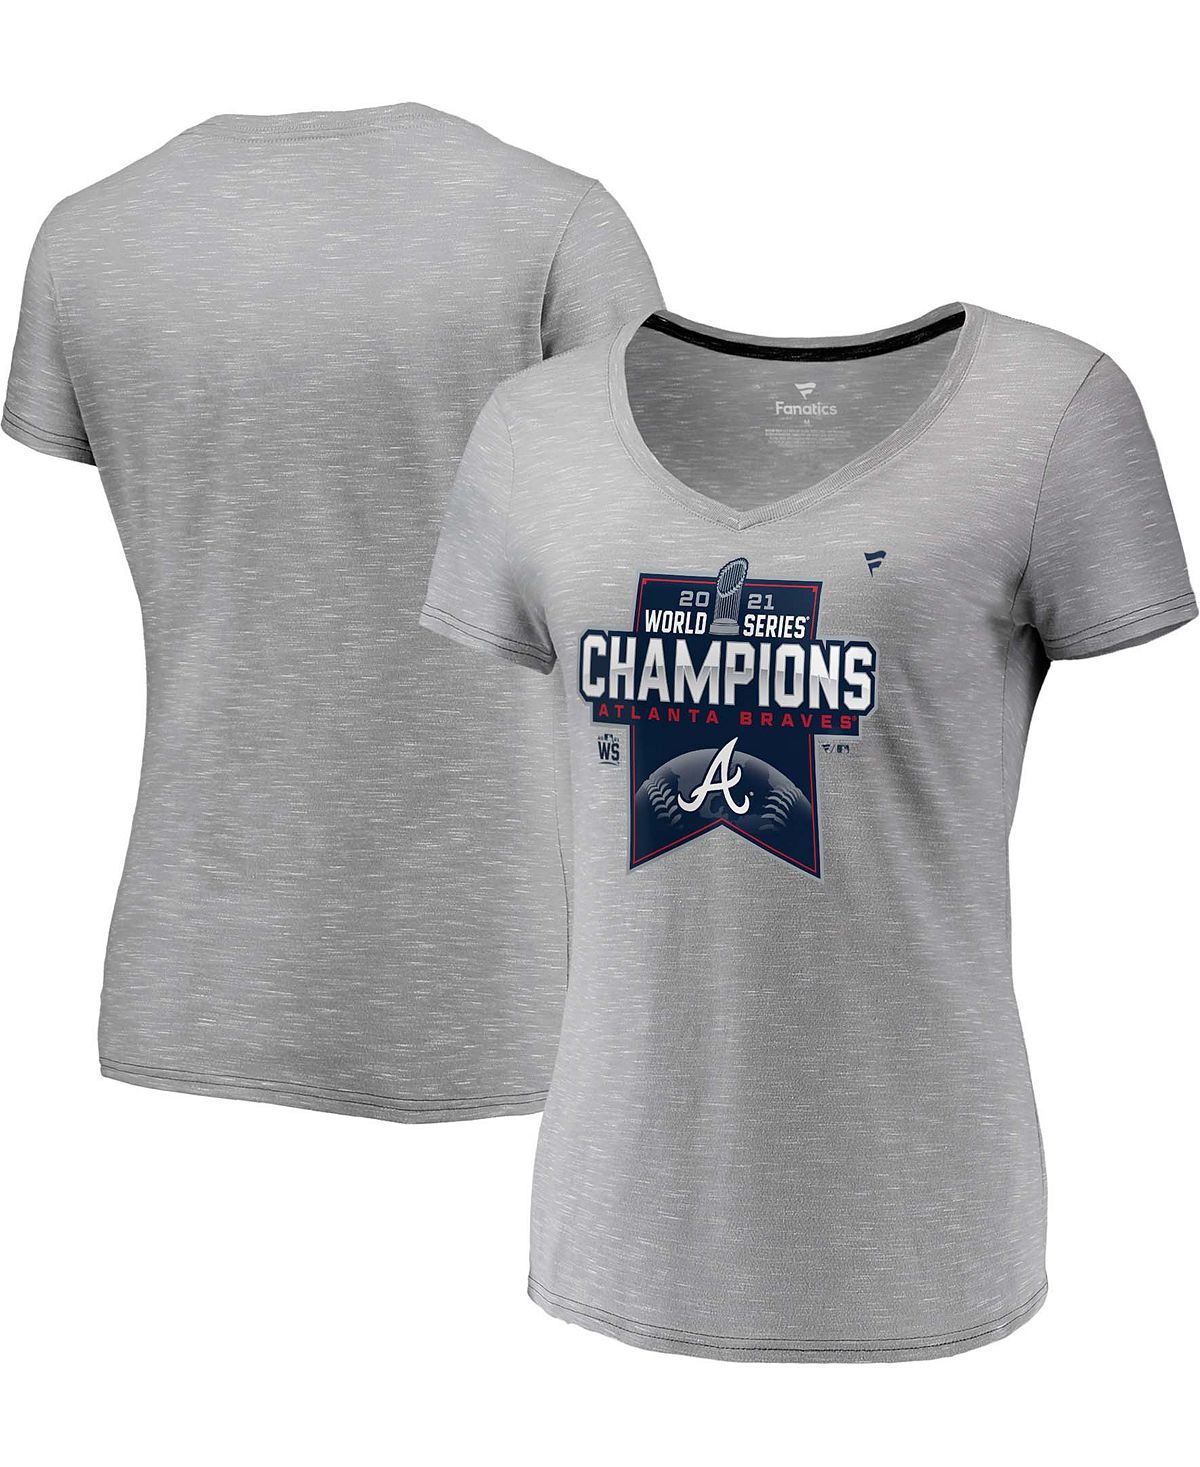 heath d upstream Женская футболка с v-образным вырезом в раздевалке Atlanta Braves World Series Champions 2021 Fanatics